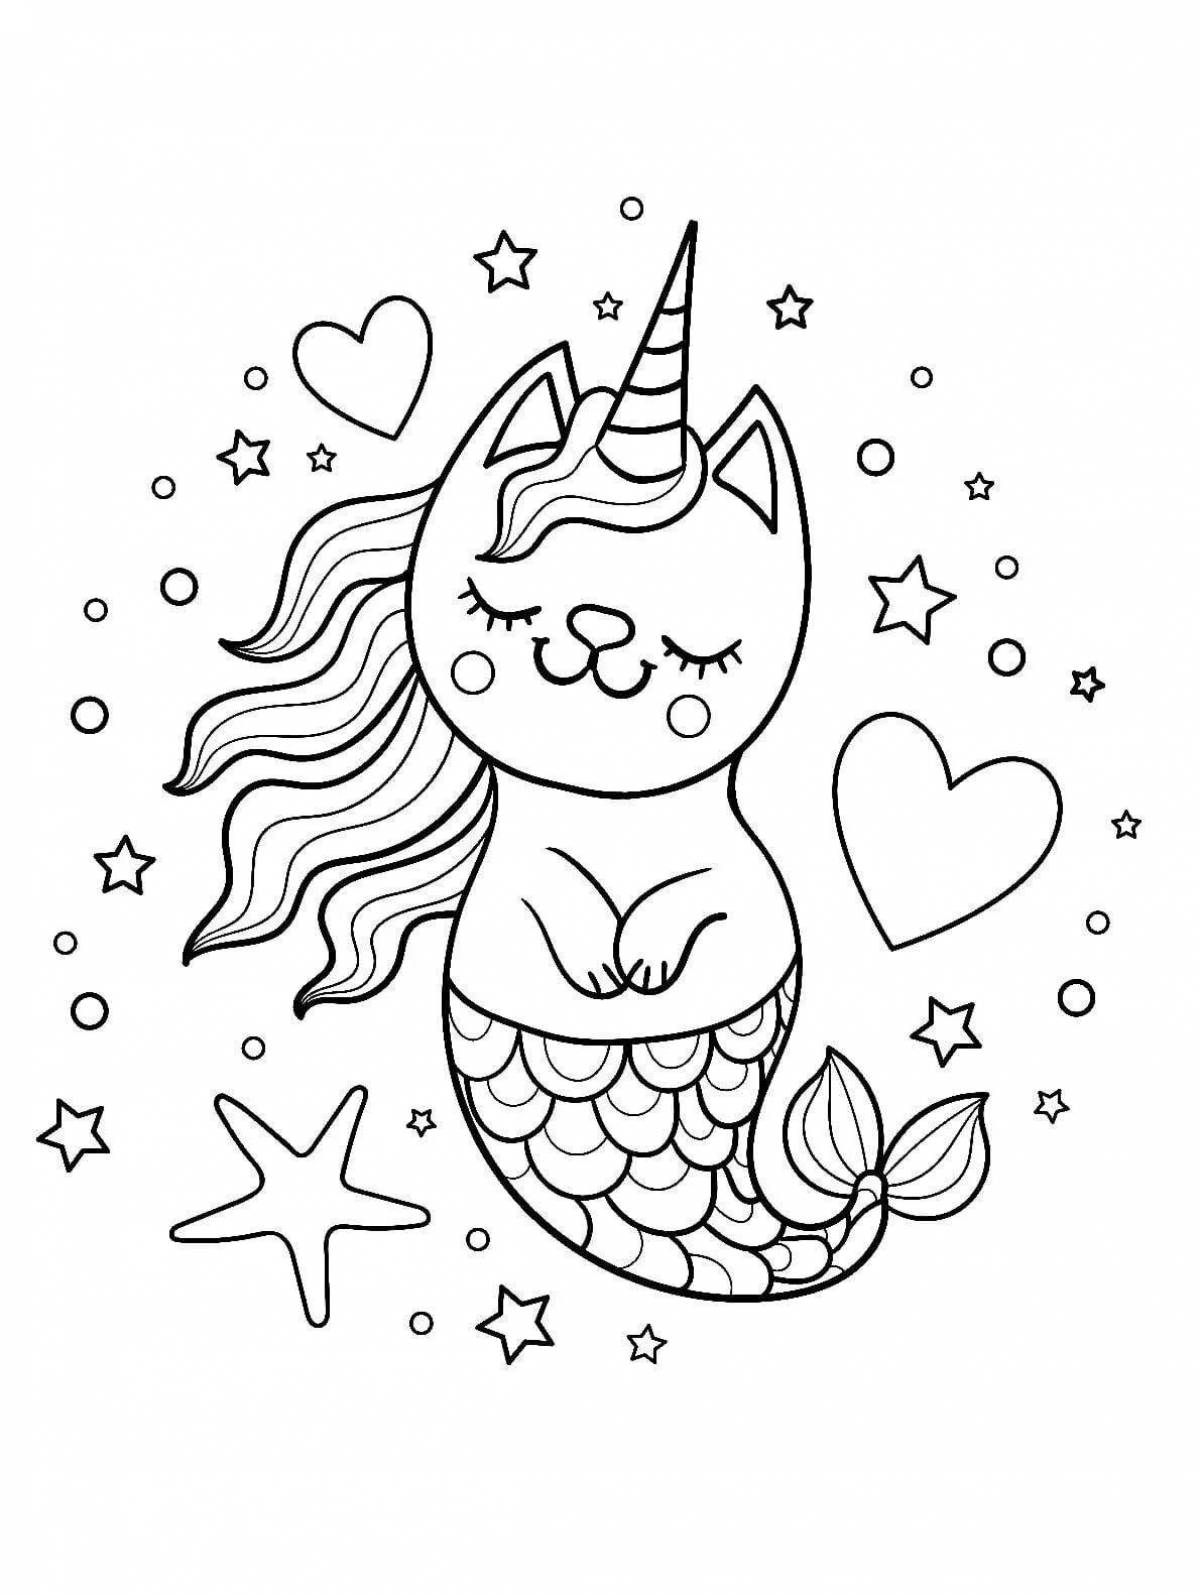 Cute unicorn cat coloring book